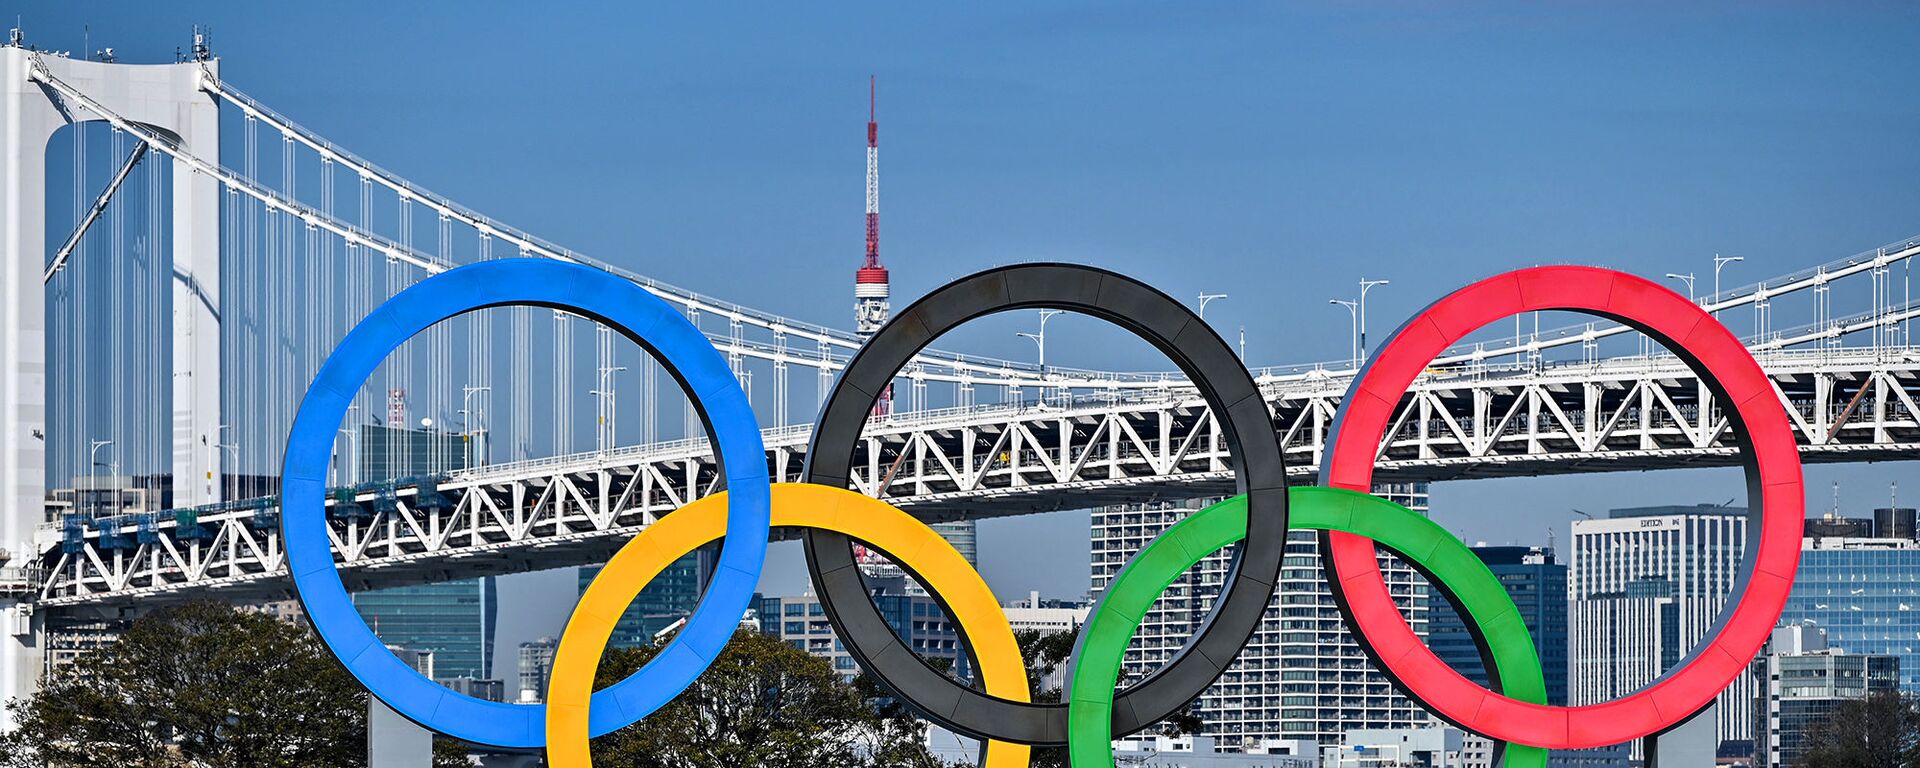 Организаторы Олимпийских игр в Токио опубликовали необычные правила поведения для гостей соревнований - Sputnik Азербайджан, 1920, 10.02.2021